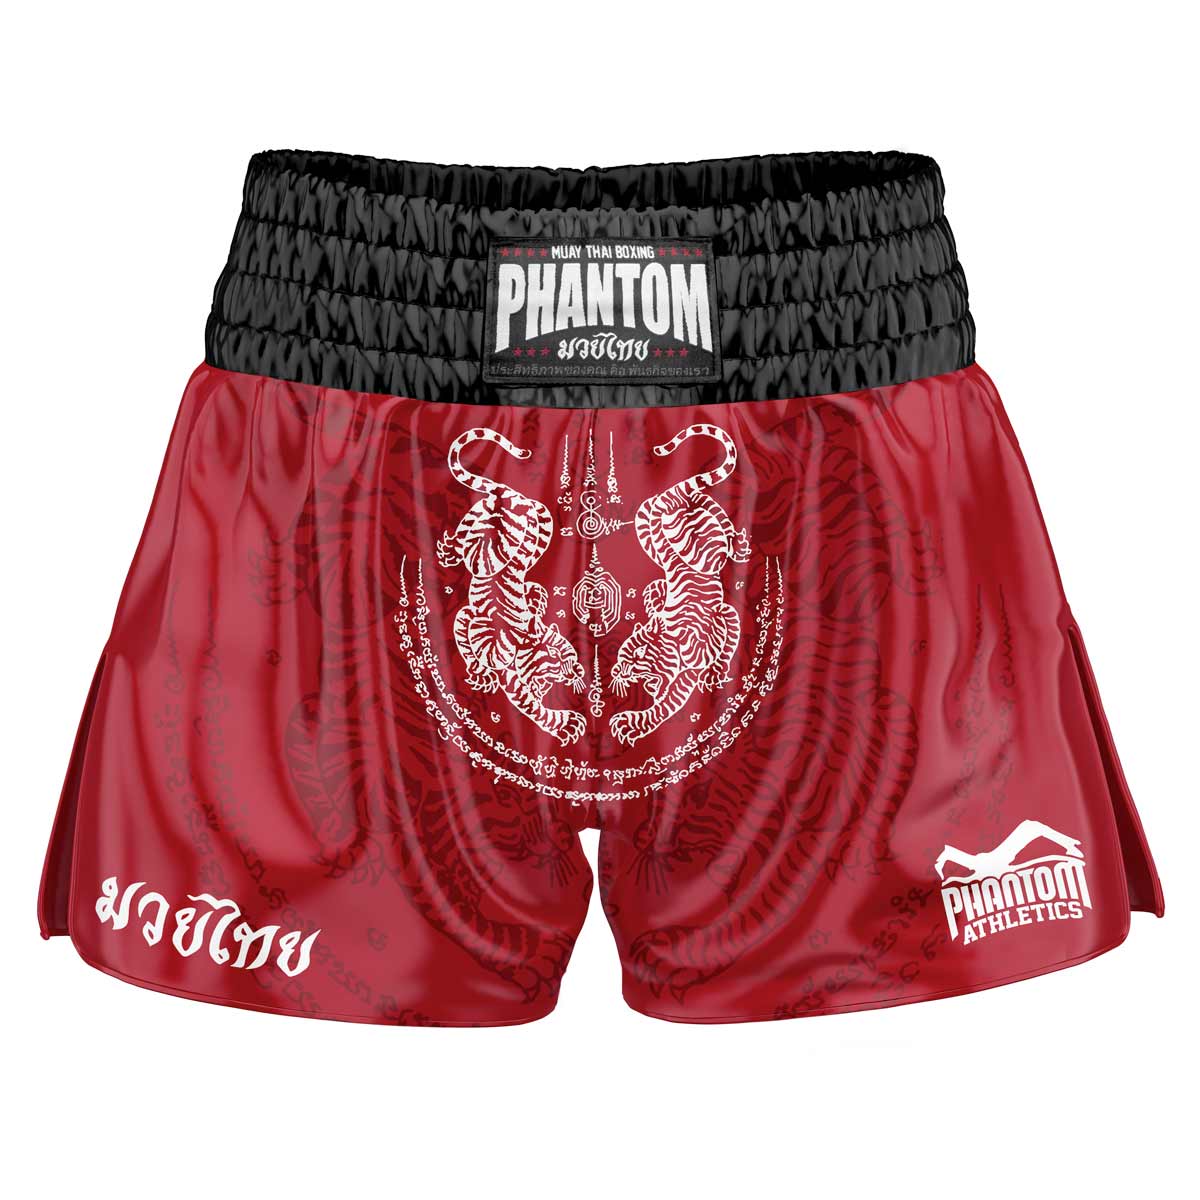 Šortky Phantom Muay Thai SAK YANT v červené barvě. Stará saténová látka s tradičním tygřím designem vám dodá originální thajský pocit. V obvyklé kvalitě Phantom Athletics . Ideální pro váš trénink a soutěž v thajském boxu.